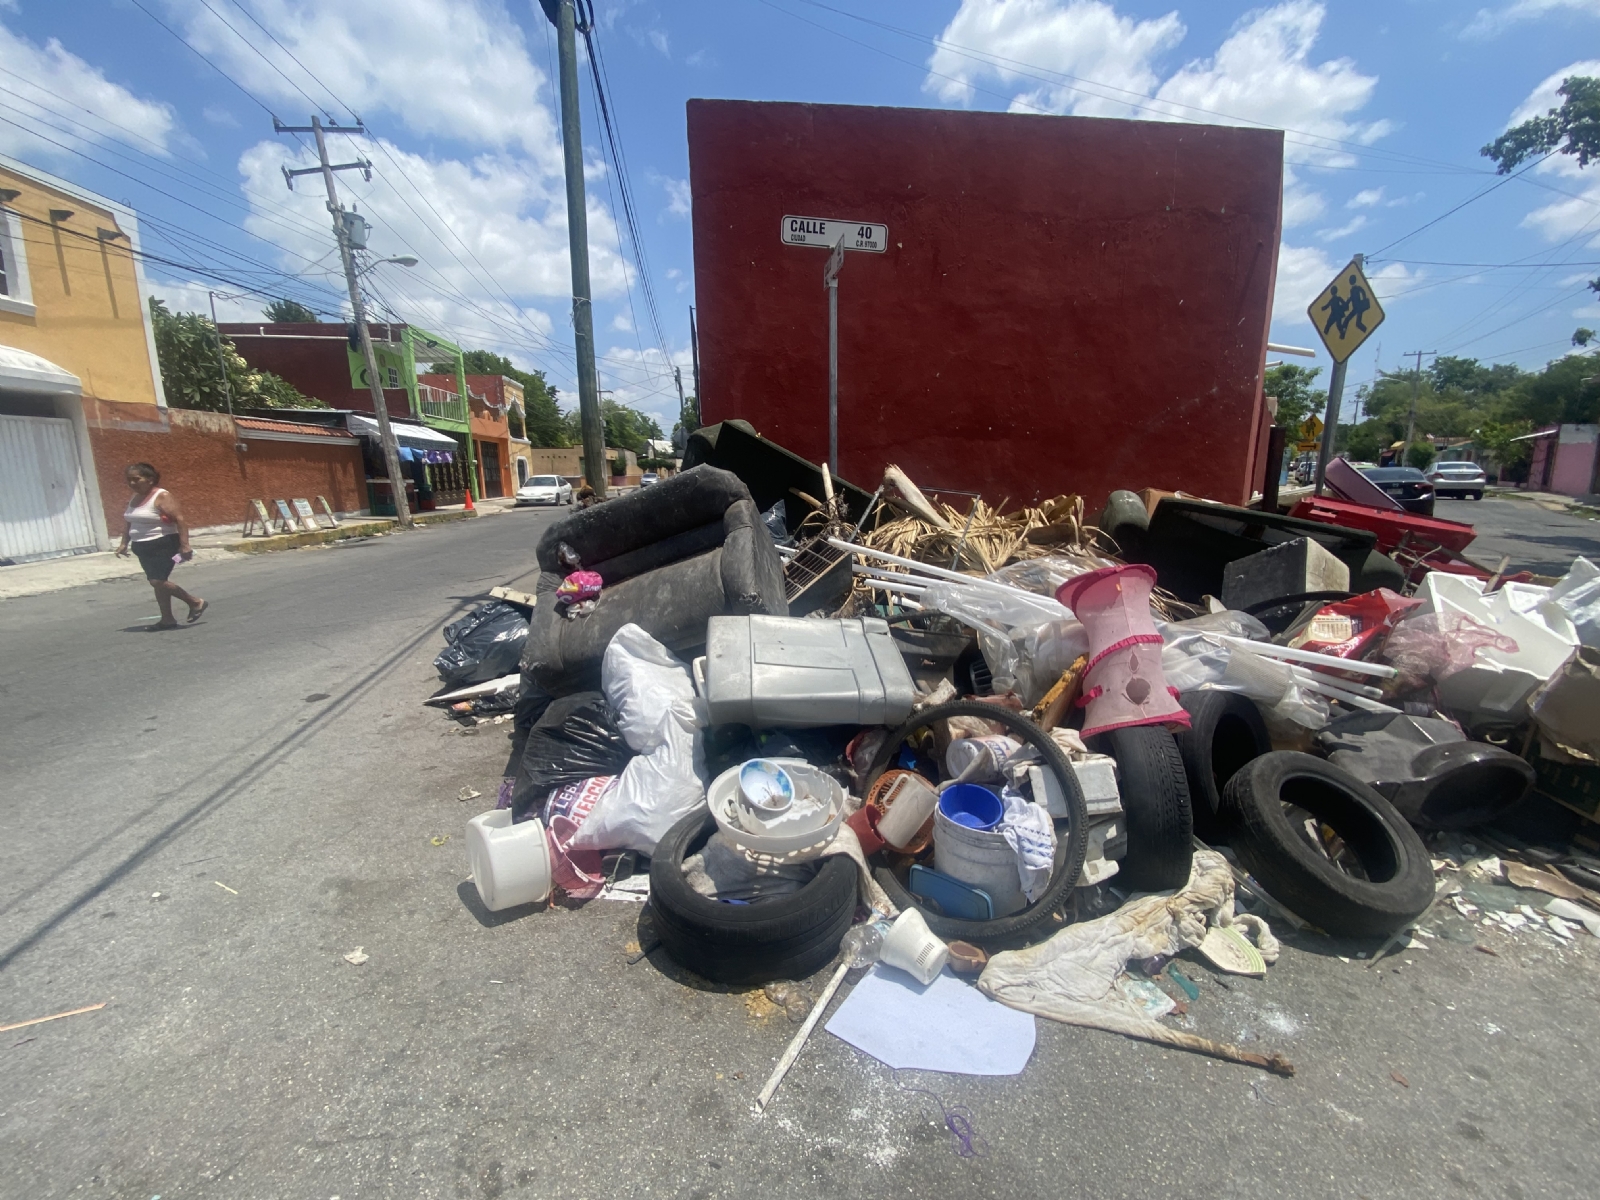 Regidores de Mérida critican que el Ayuntamiento no resuelva los acumulamientos de desperdicios